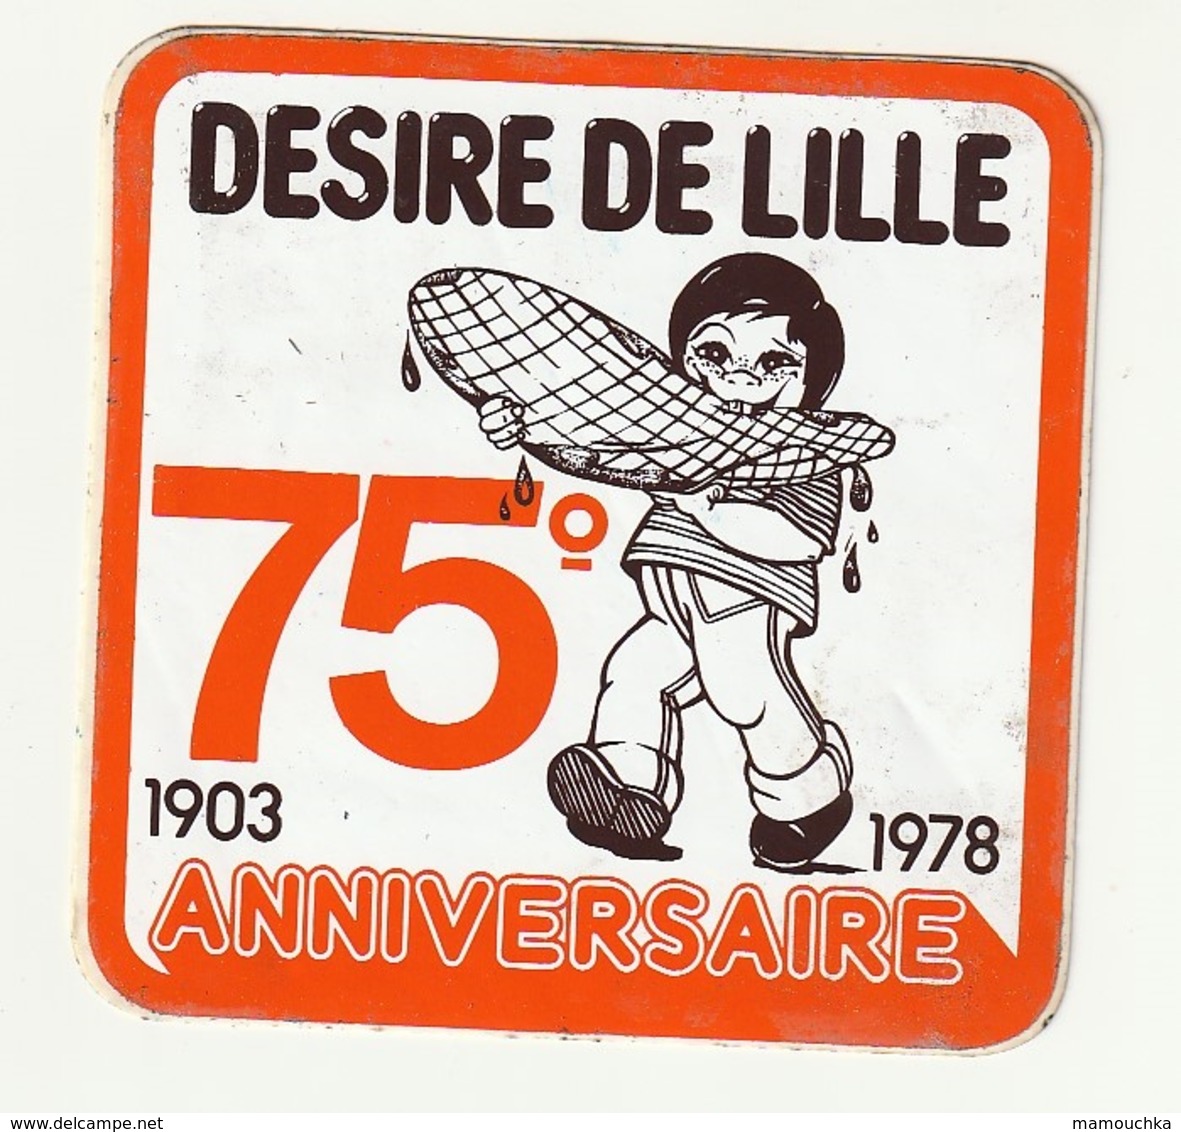 Autocollant Sticker Desire DE LILLE 75 ° Anniversaire 1903 - 1978 - Autocollants